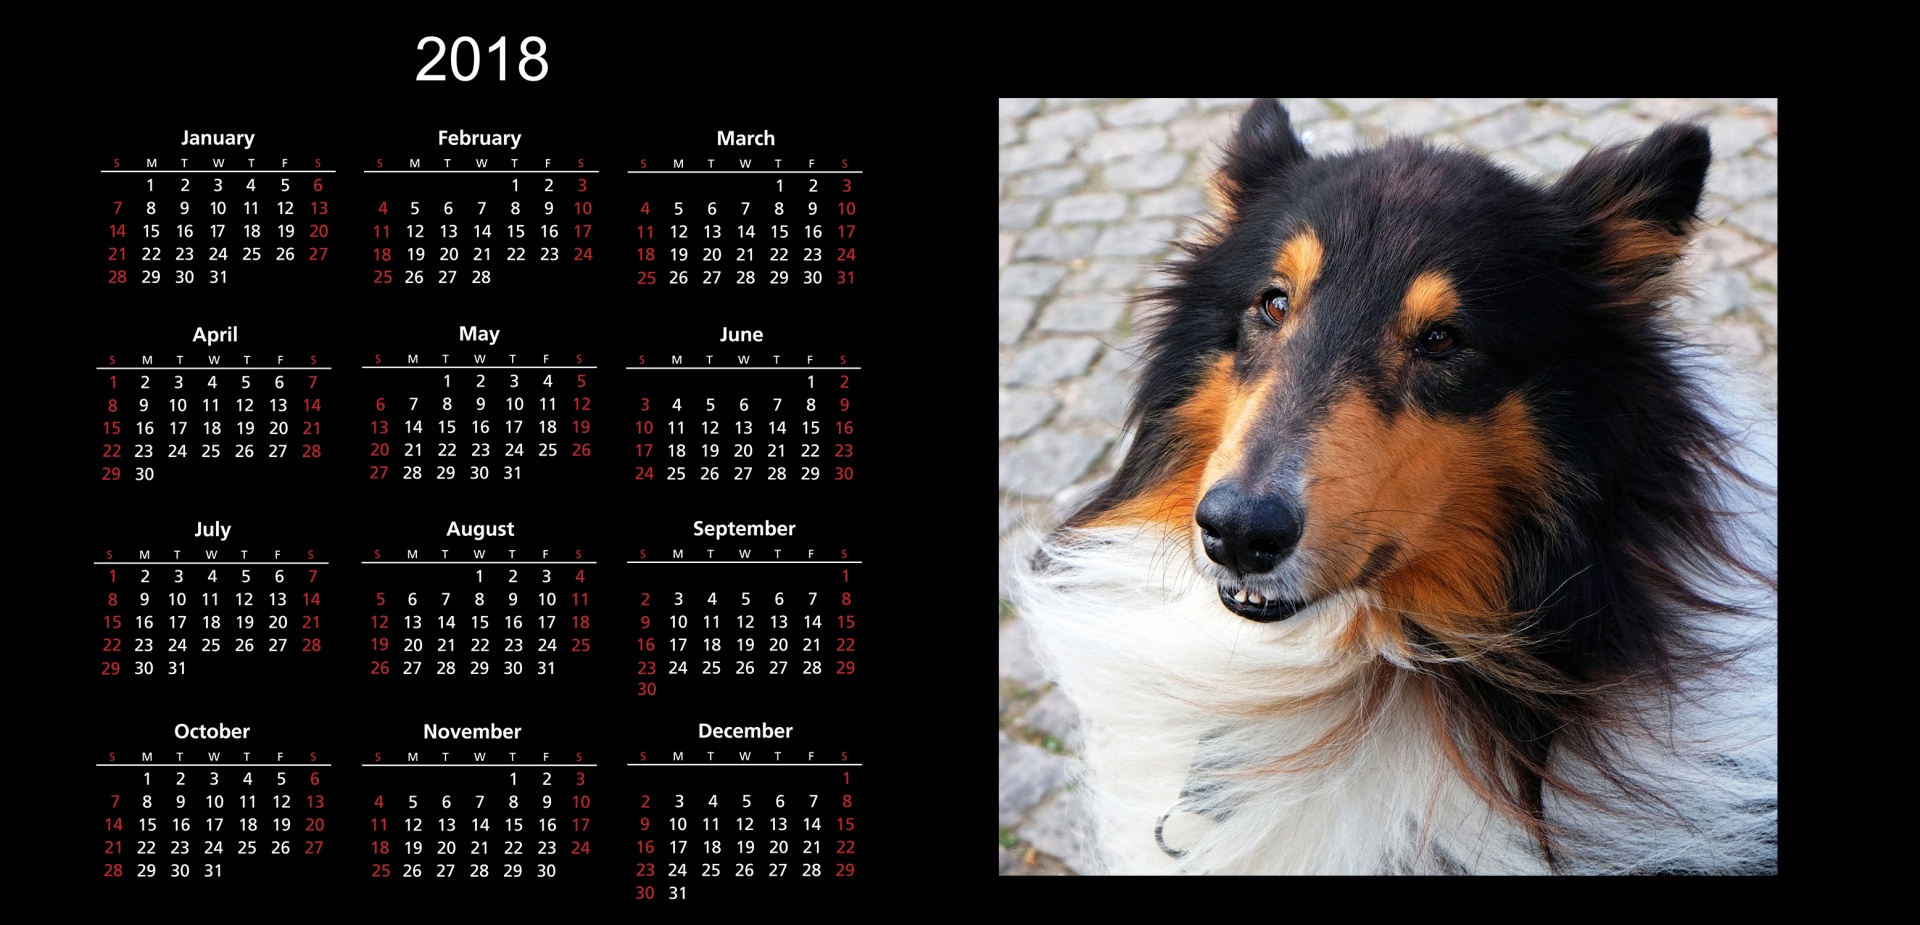 2018 calendar 2018 calendar free photo